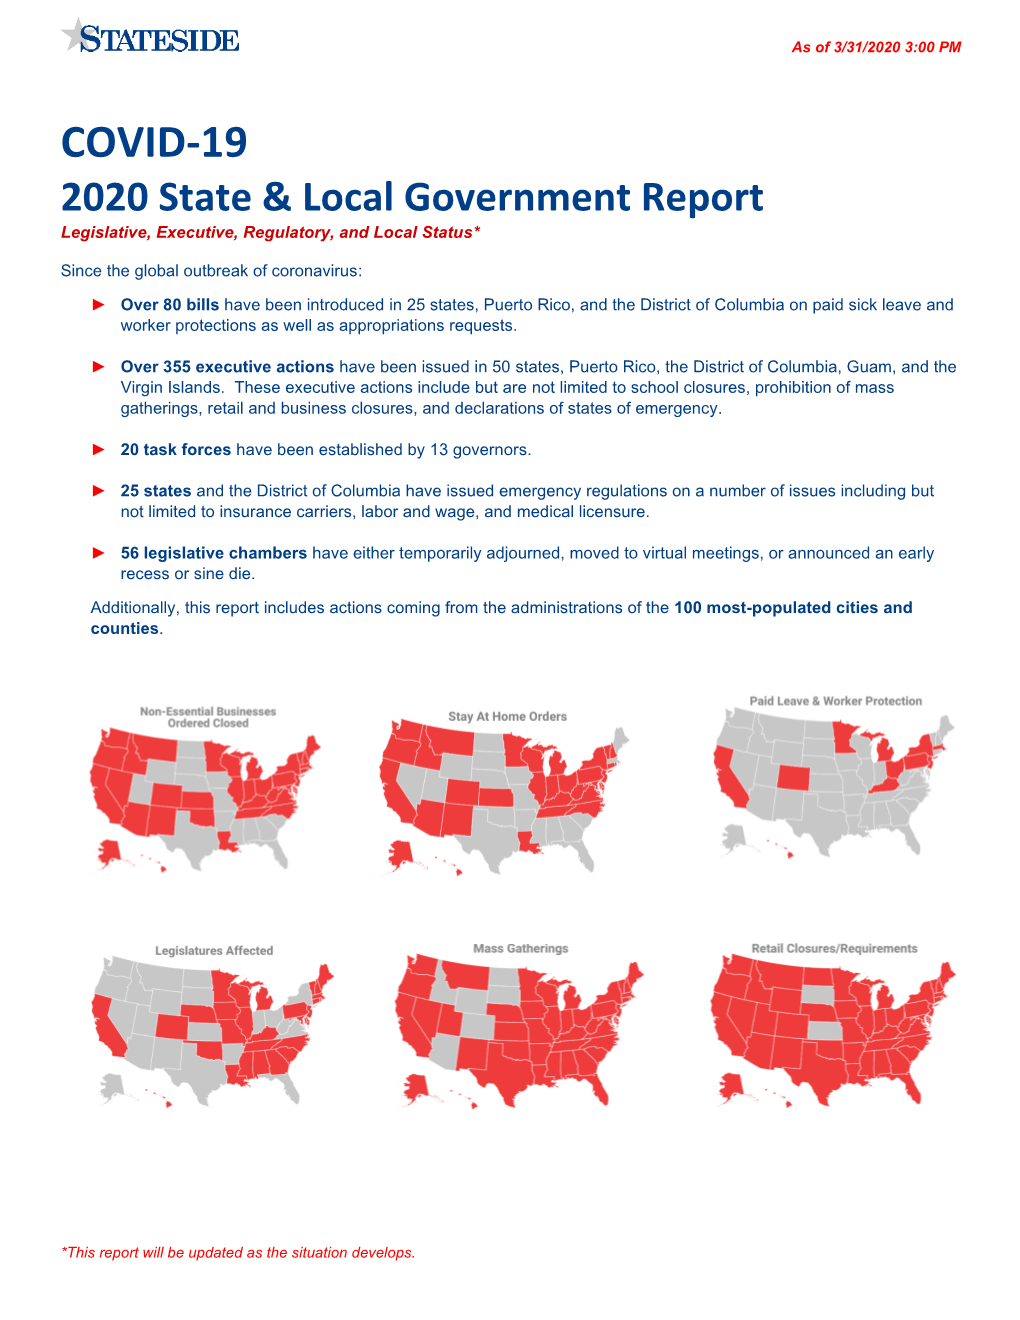 COVID-19 2020 State & Local Government Report